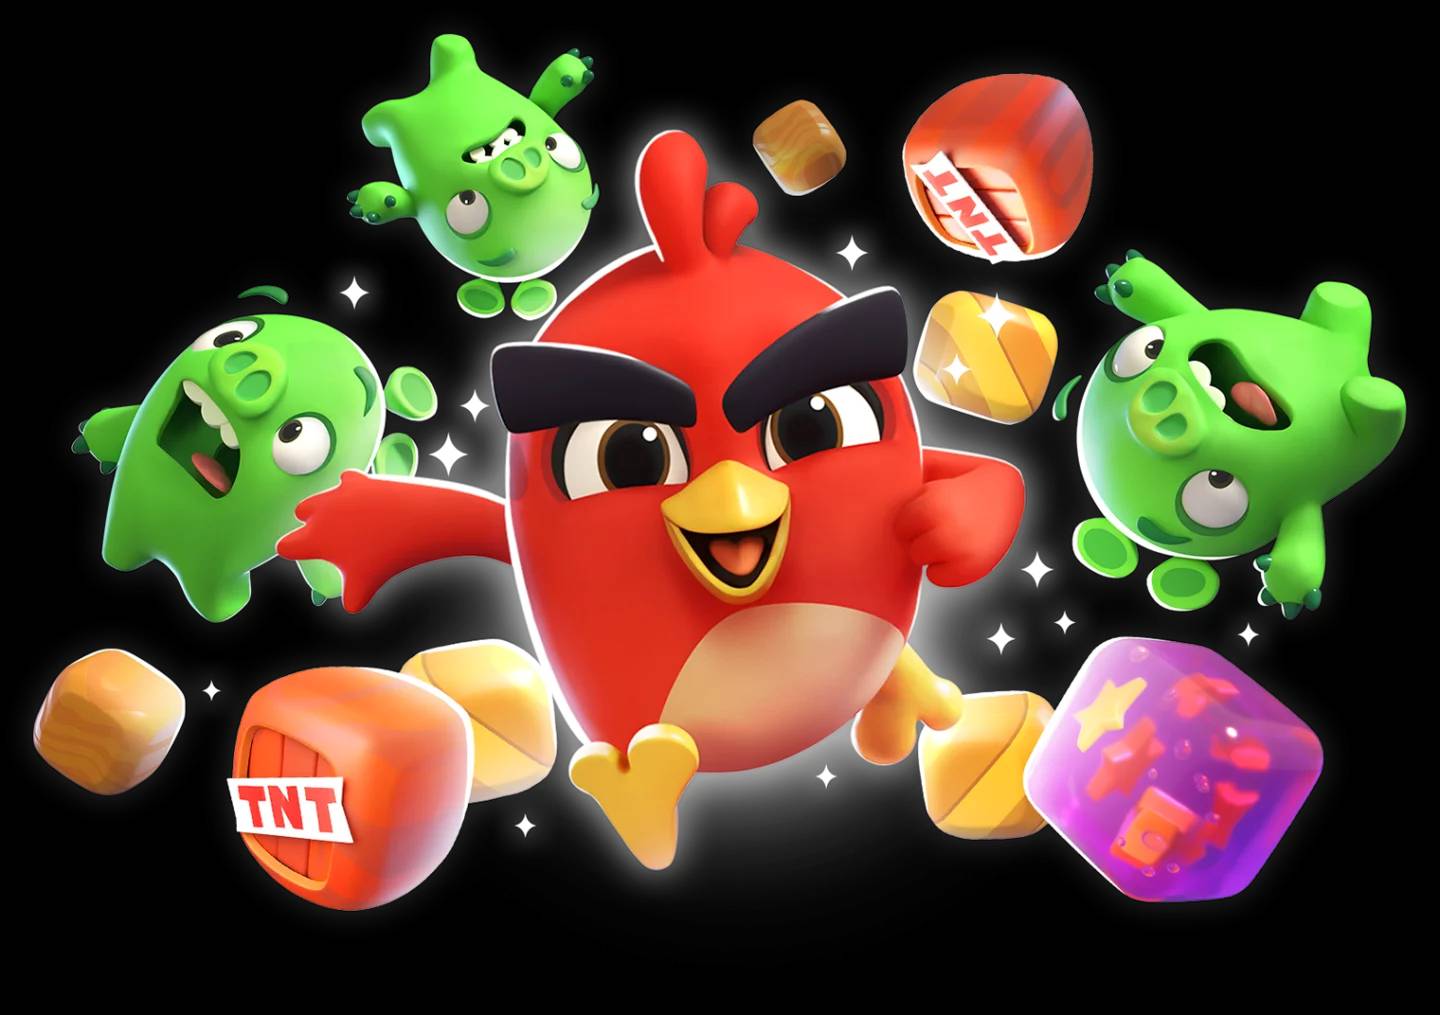 Pré-registro, os pássaros voltaram! Novo Angry Birds da Rovio é anunciado!